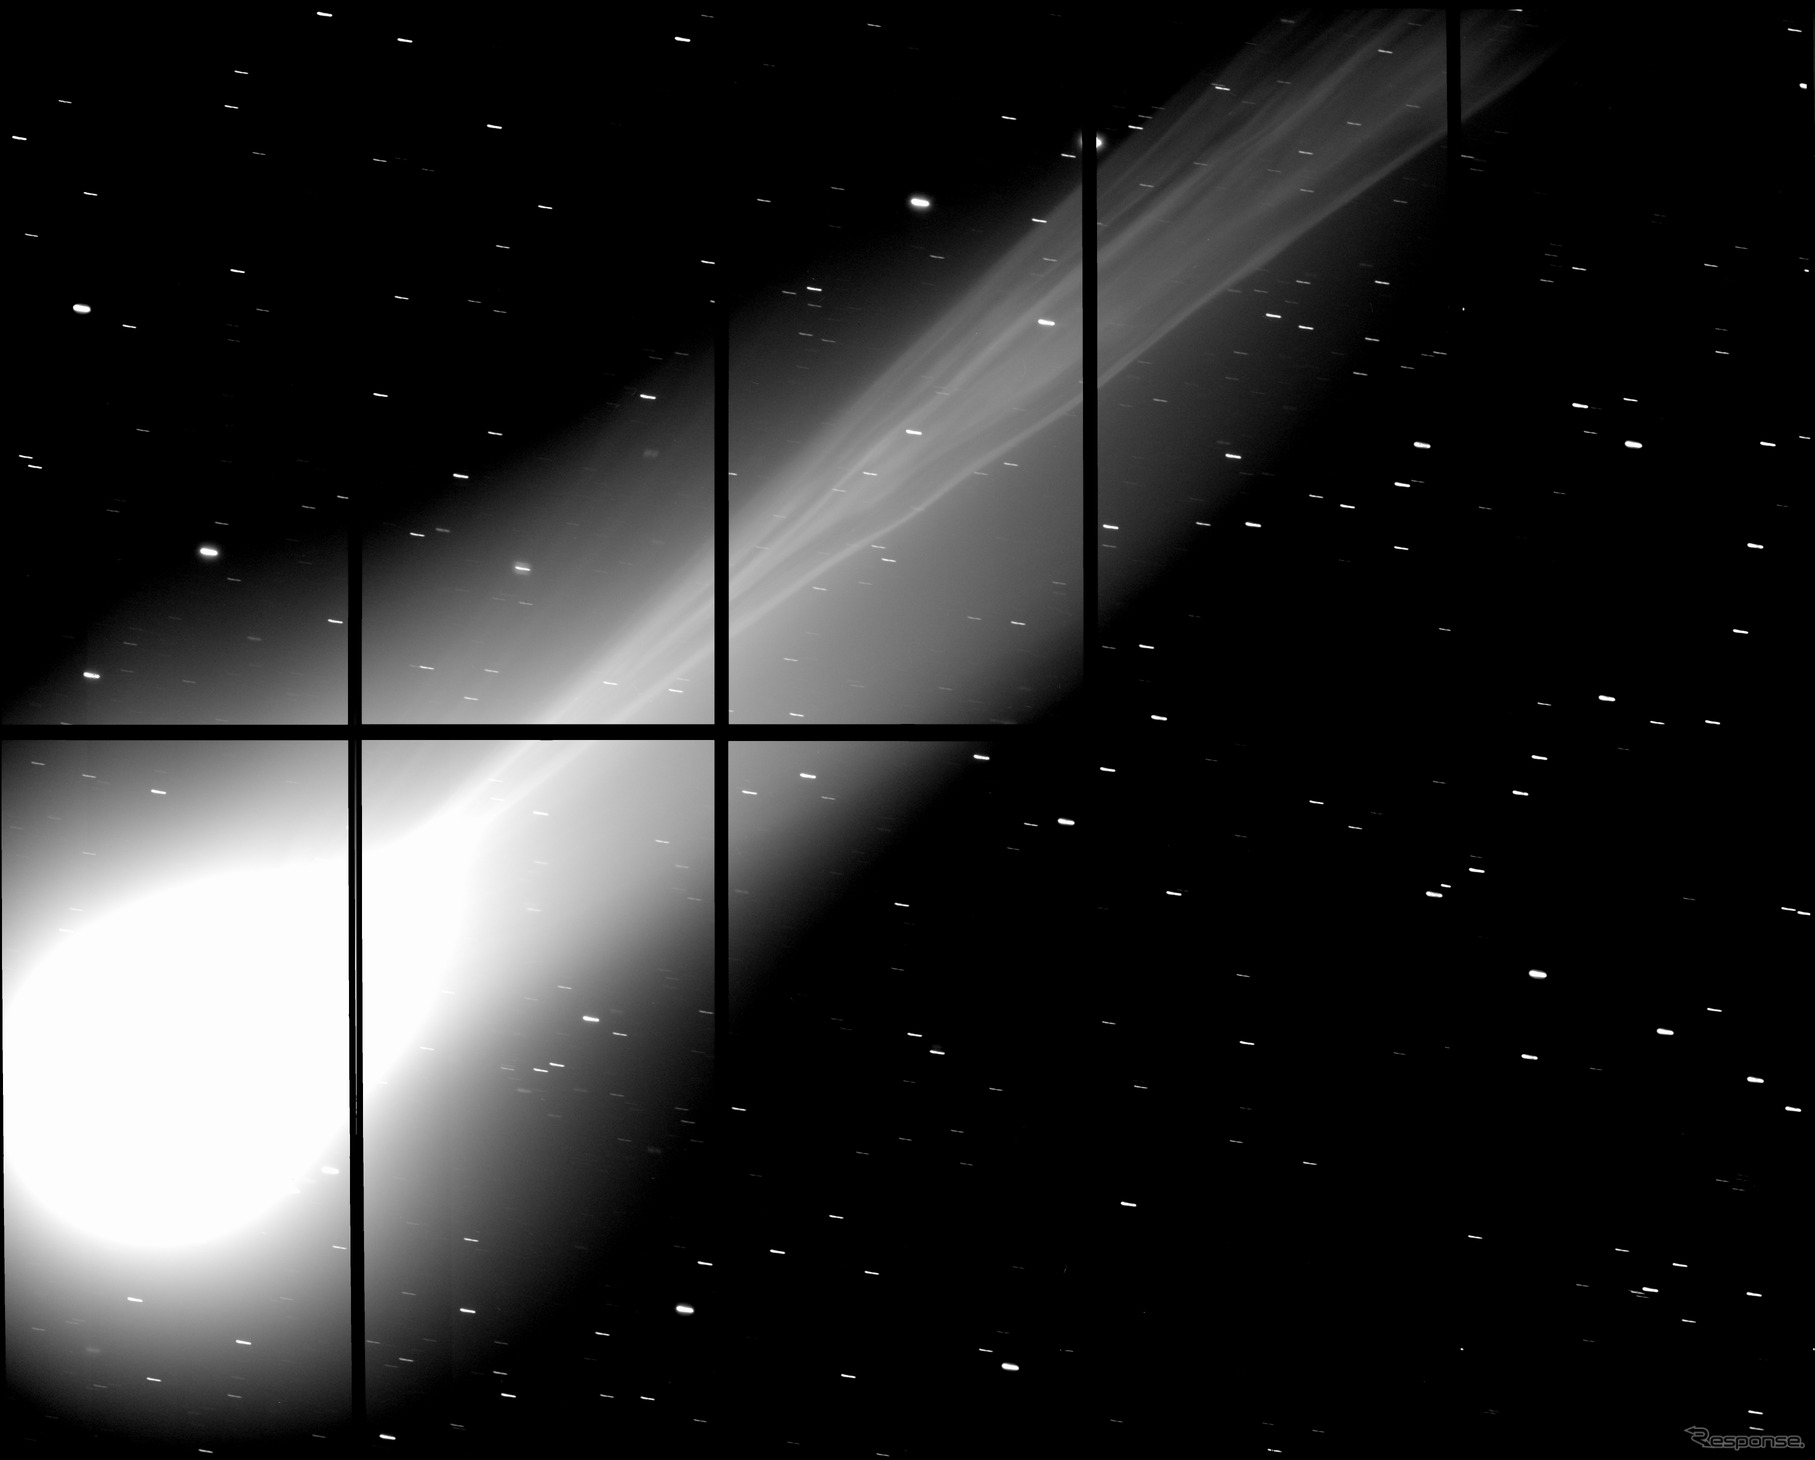 すばる望遠鏡に搭載された Suprime-Cam が撮影したラブジョイ彗星 (C/2013 R1)。ハワイ時間2013年12月3日撮影。波長 450 ナノメートル (Bバンド)、180 秒露出。